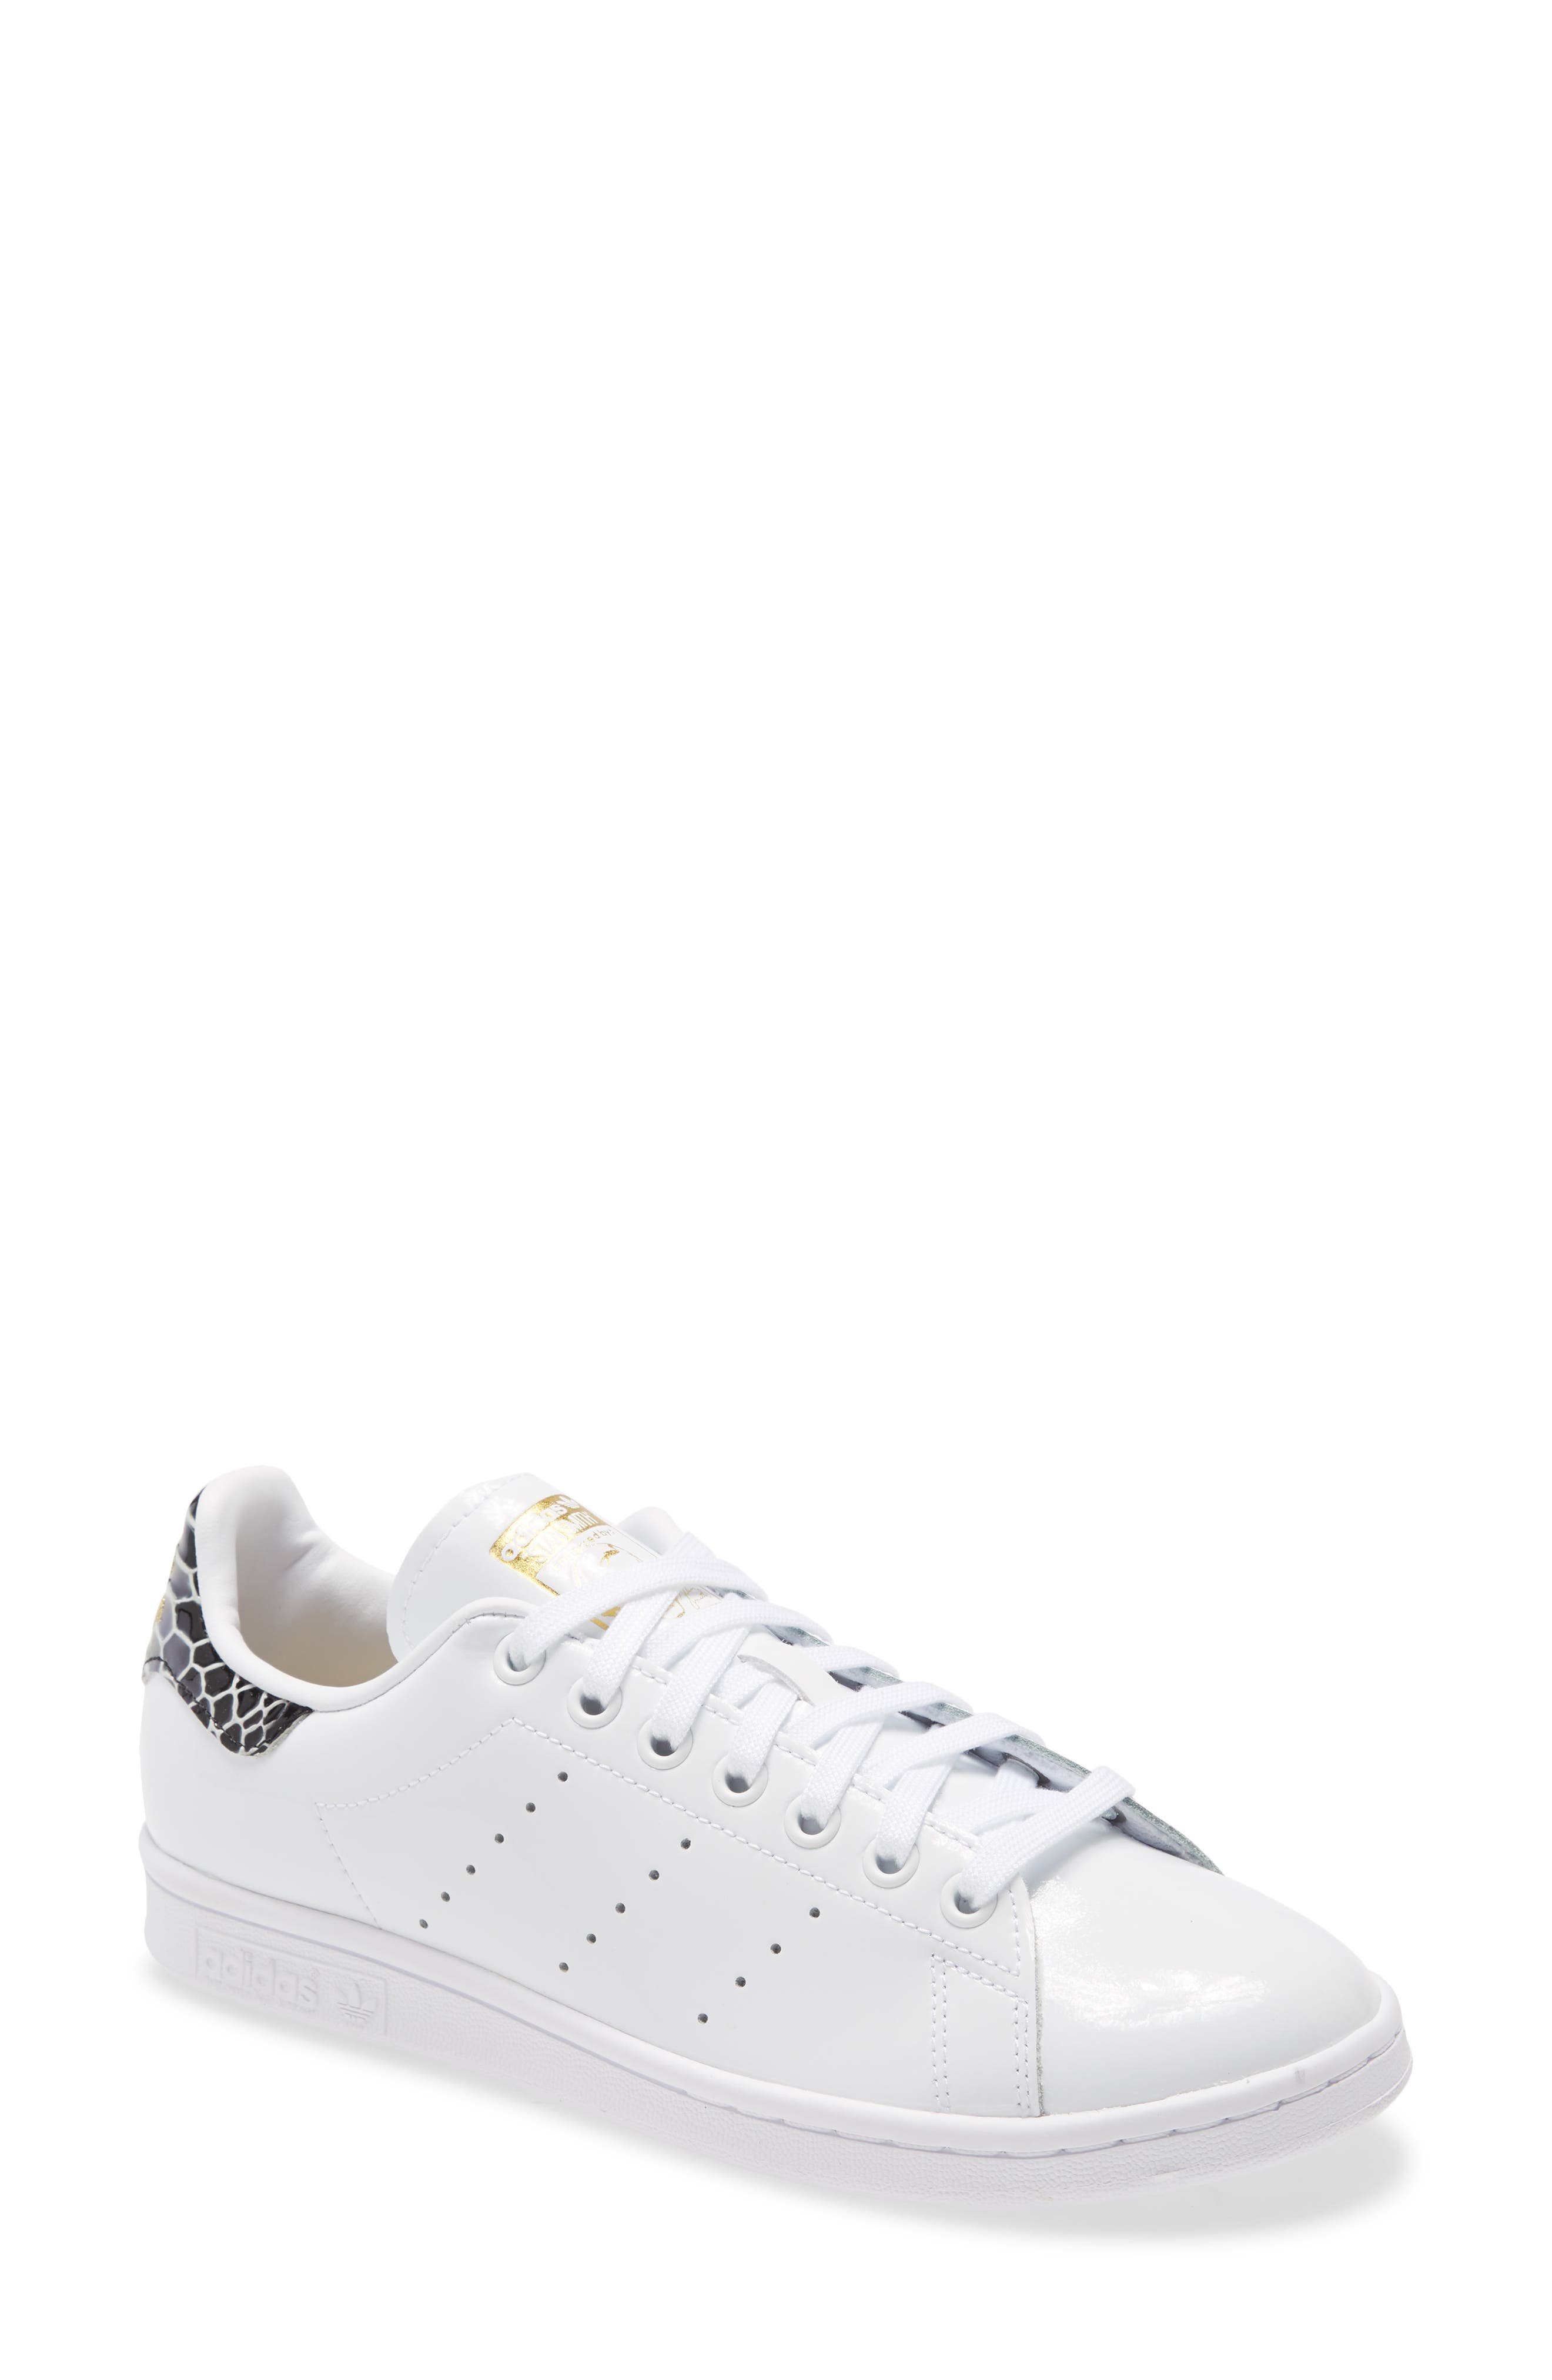 sport shoes white colour